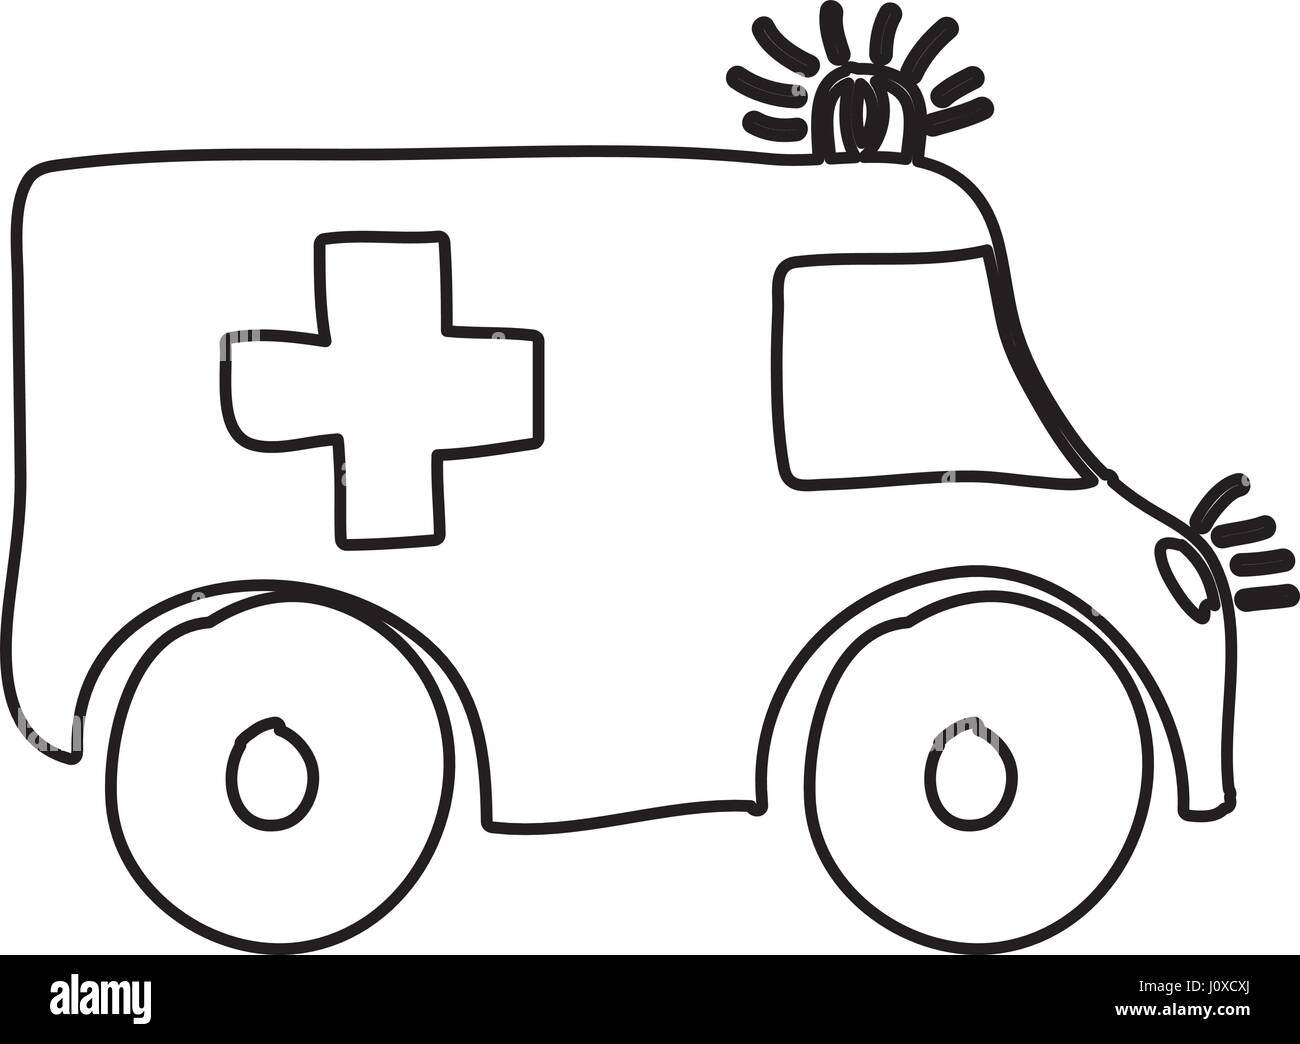 Monocromo de contornos dibujados a mano de ambulancia Ilustración del Vector